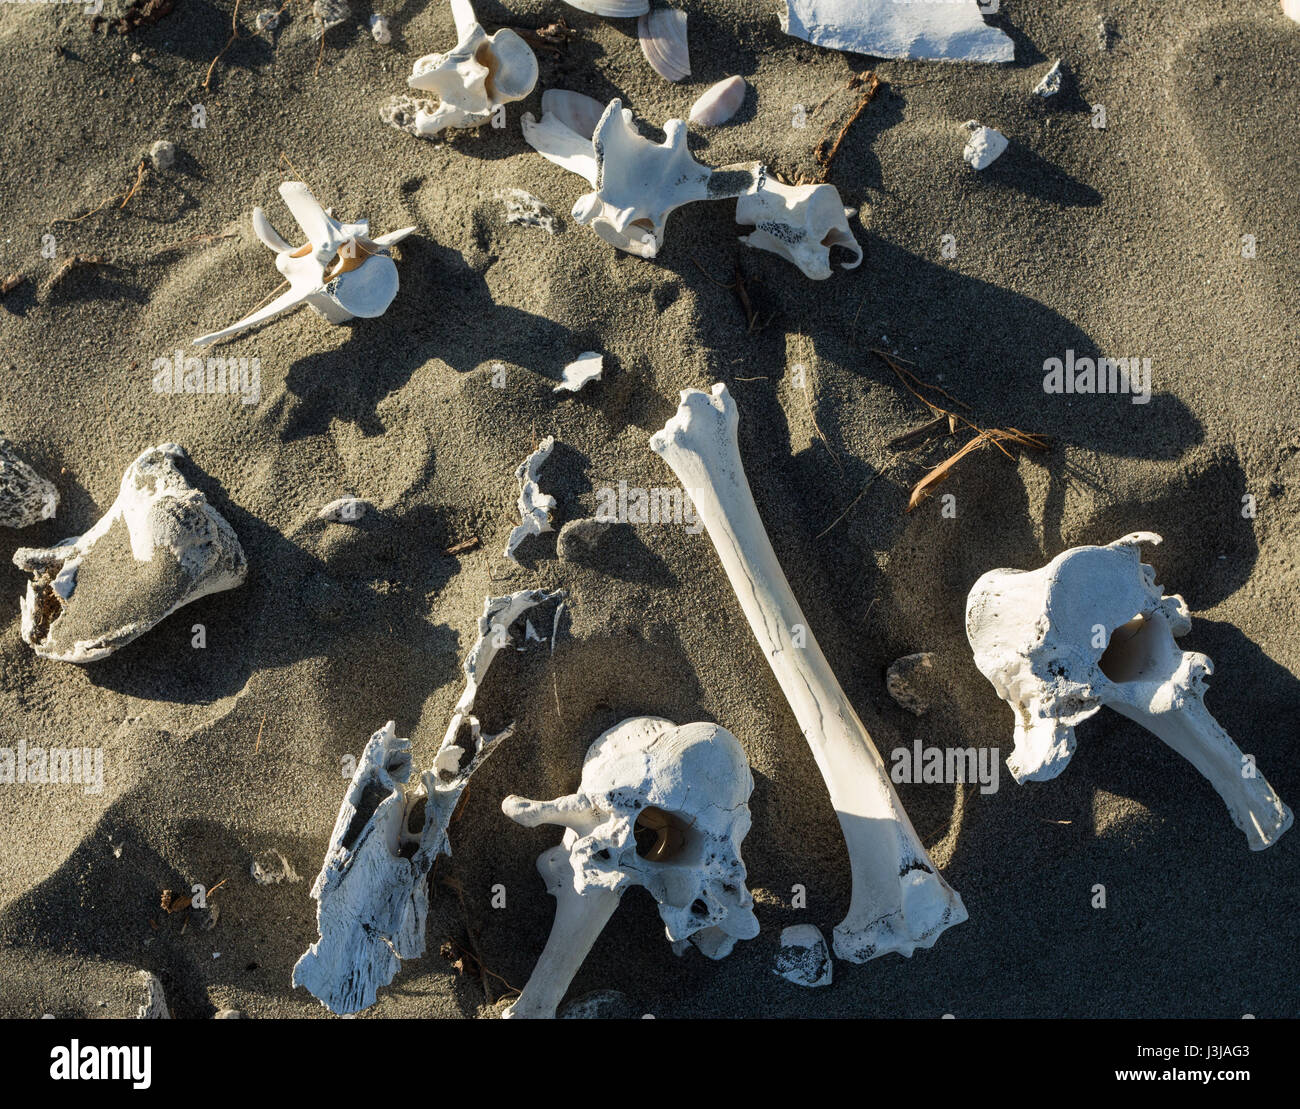 Mischung aus Knochen bleibt in den Sand legen. Stockfoto